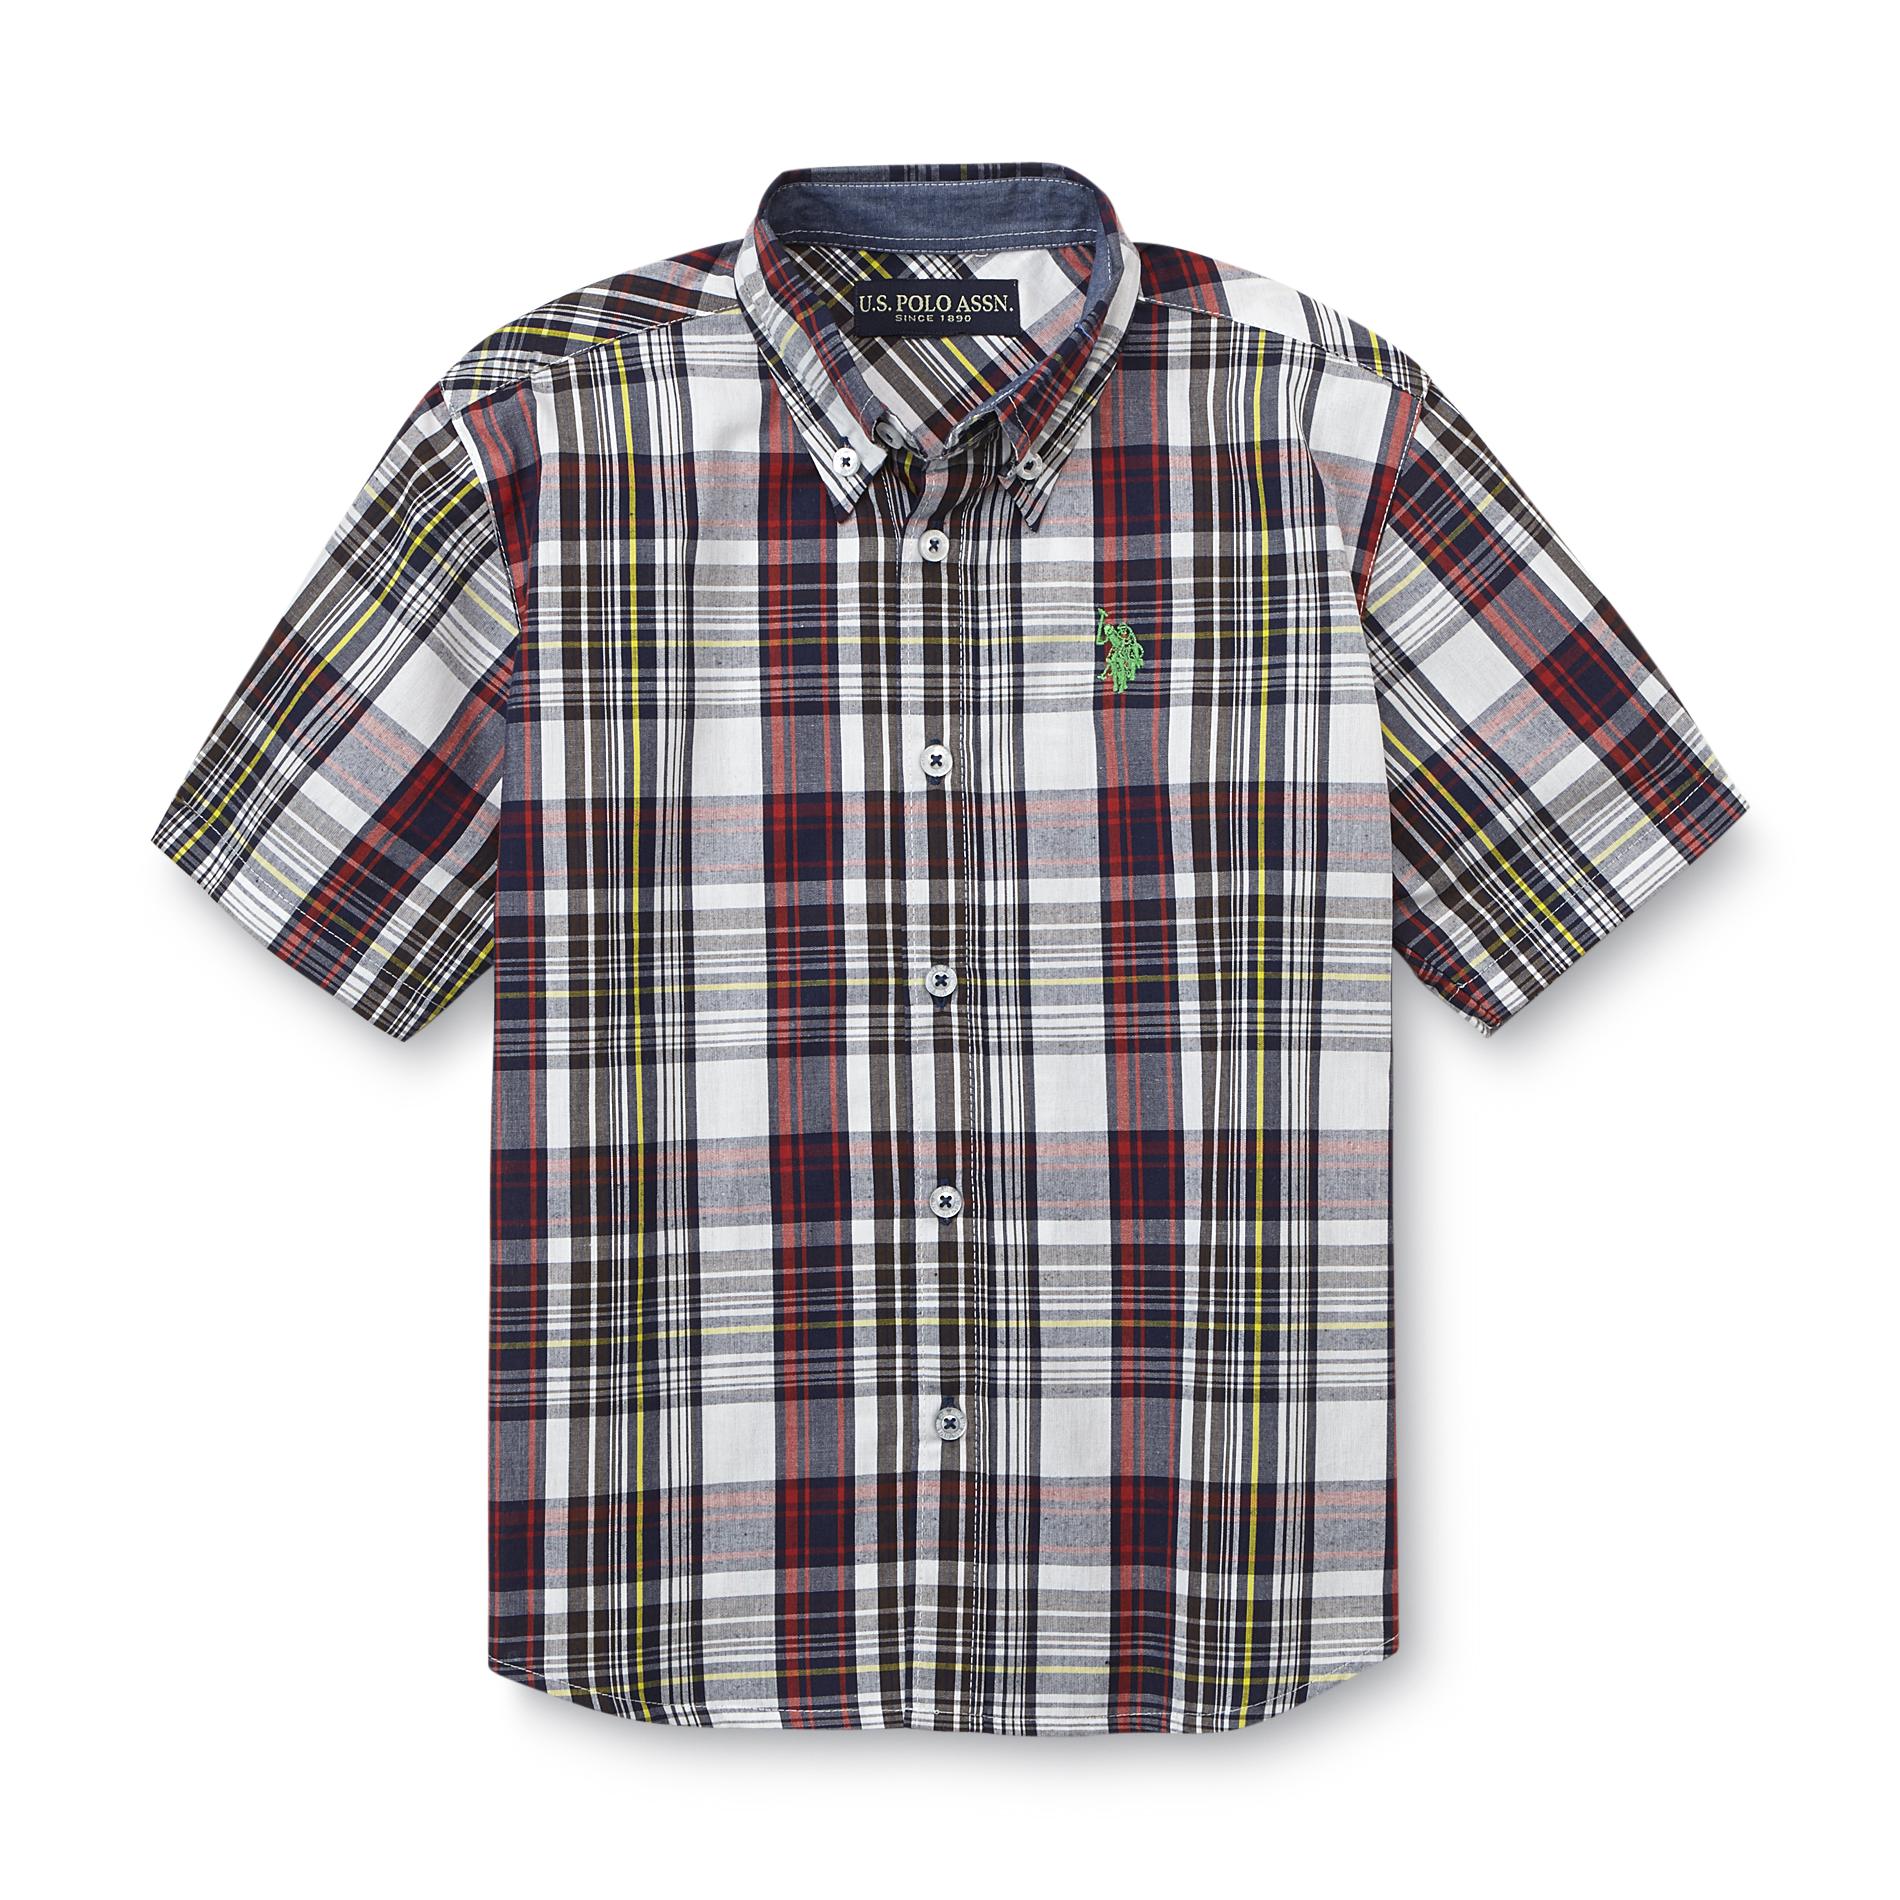 U.S. Polo Assn. Boy's Short-Sleeve Button-Front Shirt - Plaid